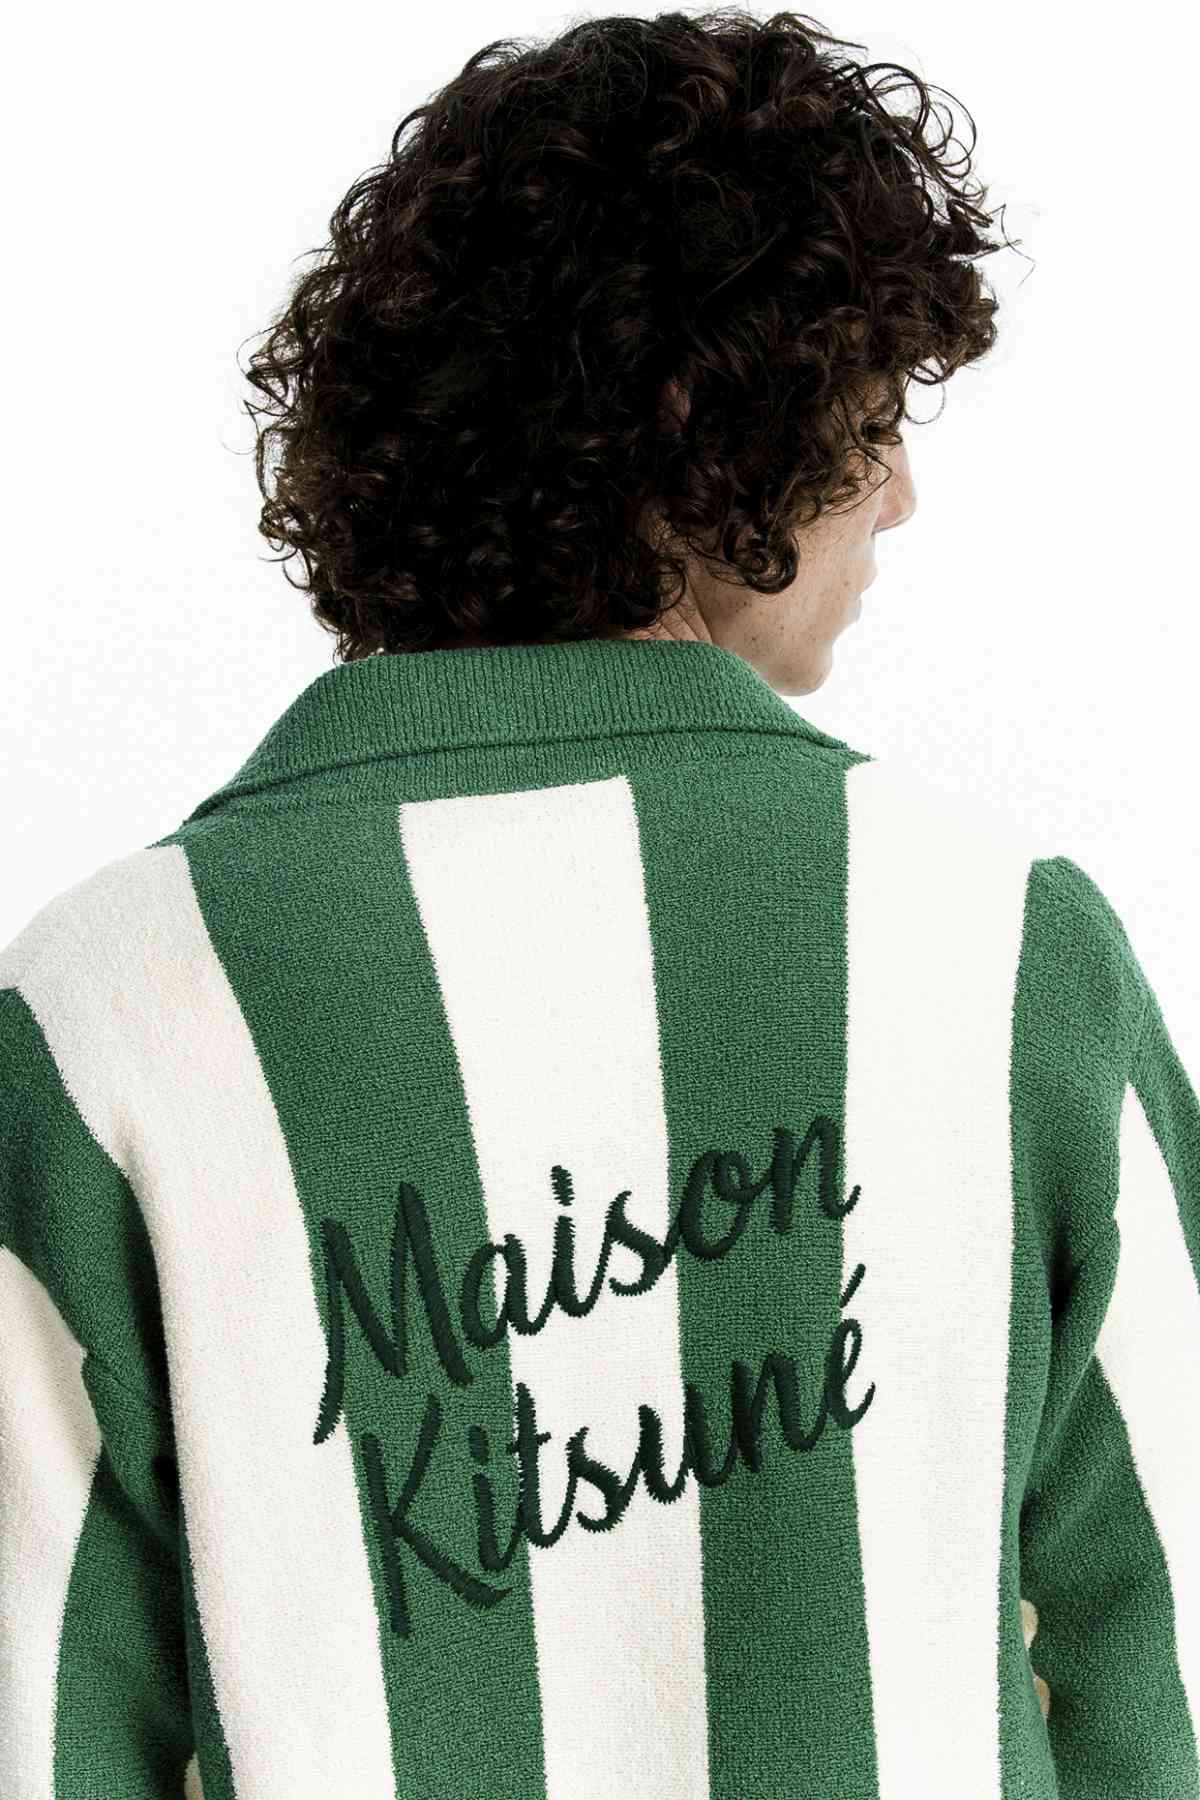 Maison Kitsuné's Colour Splash: The Spring-Summer 2023 Collection